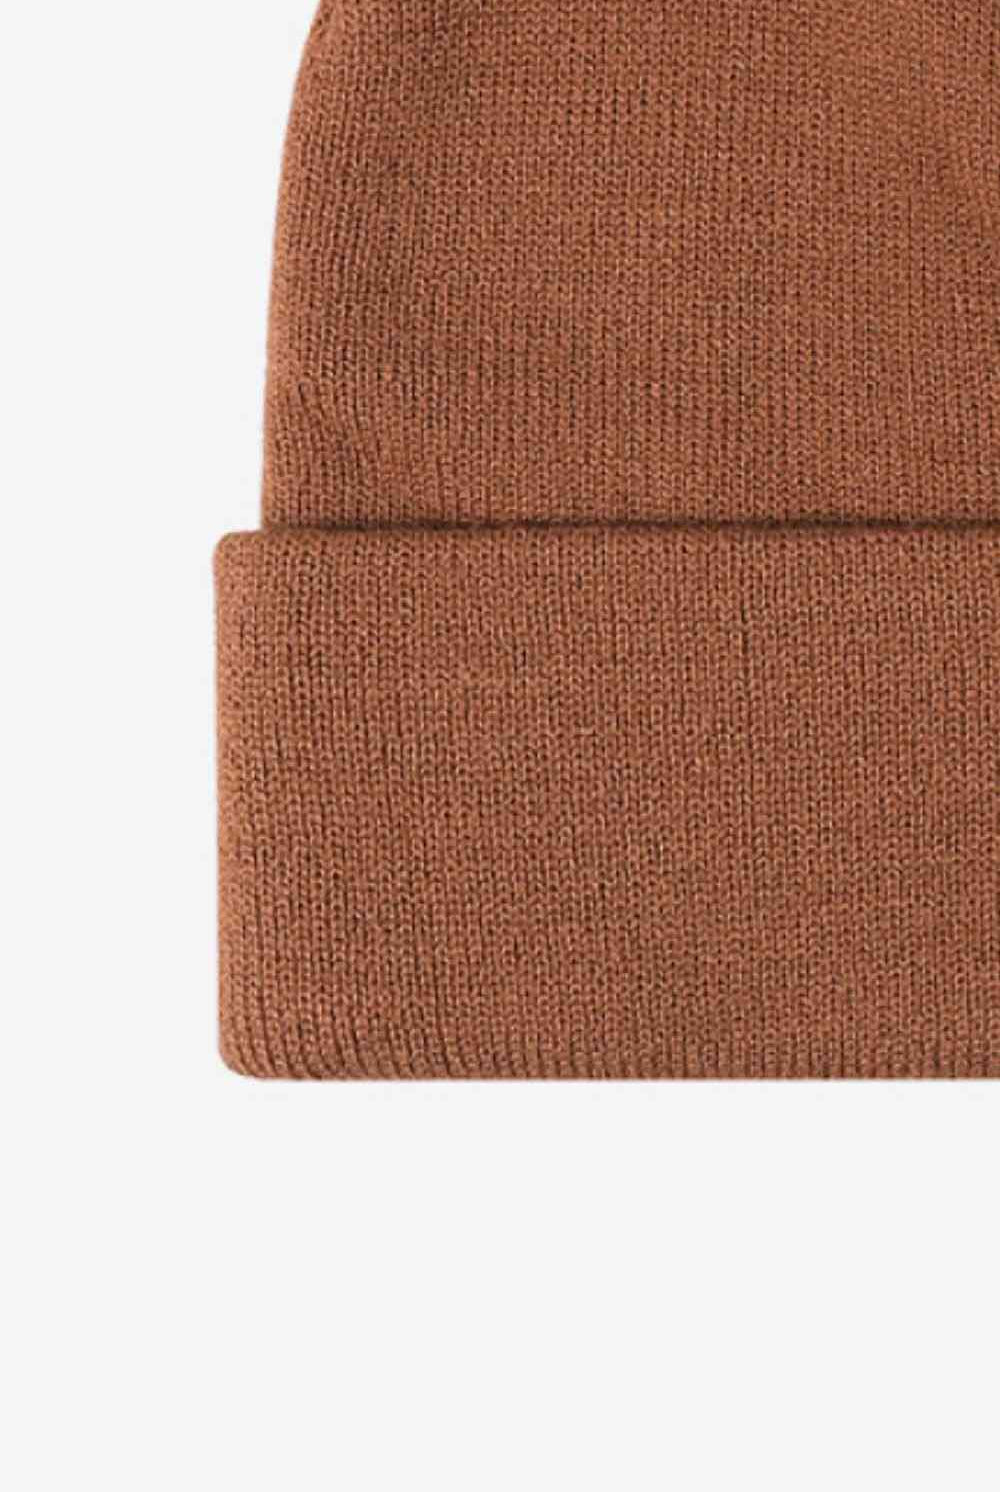 Sienna Cuff Knit Beanie Winter Accessories